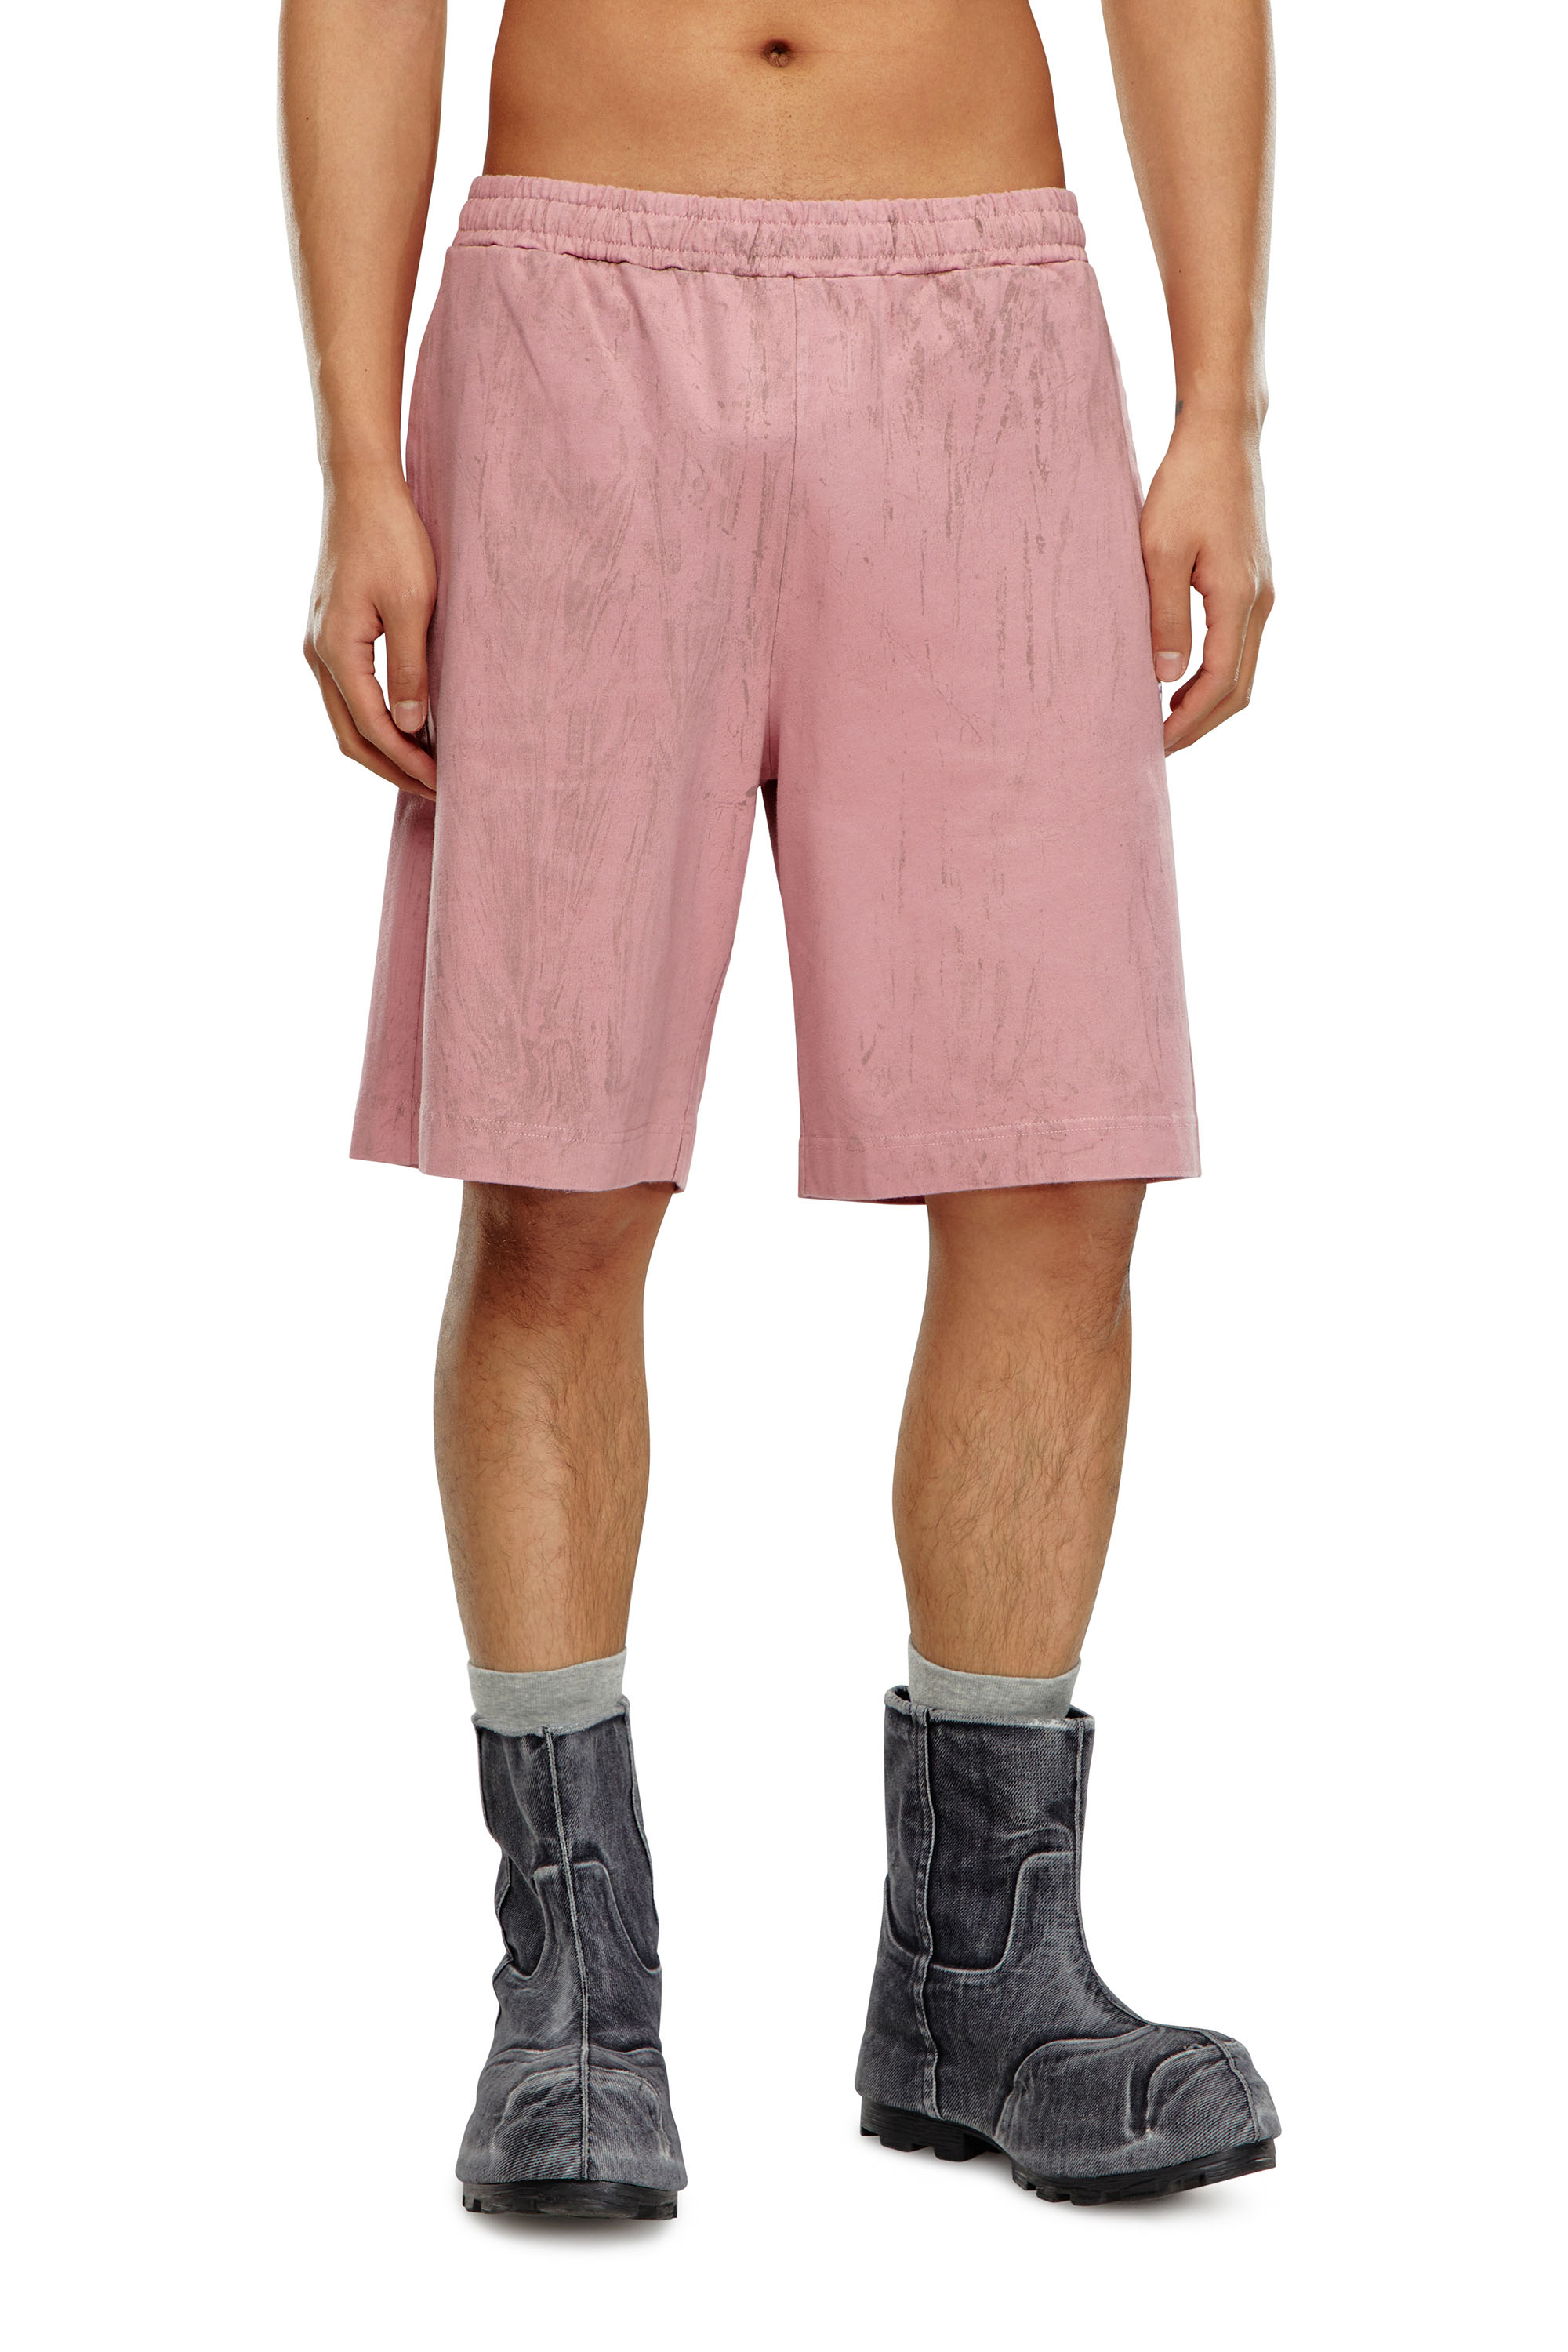 Diesel - Pantalones cortos de tejido con efecto craquelado - Shorts - Hombre - Rosa